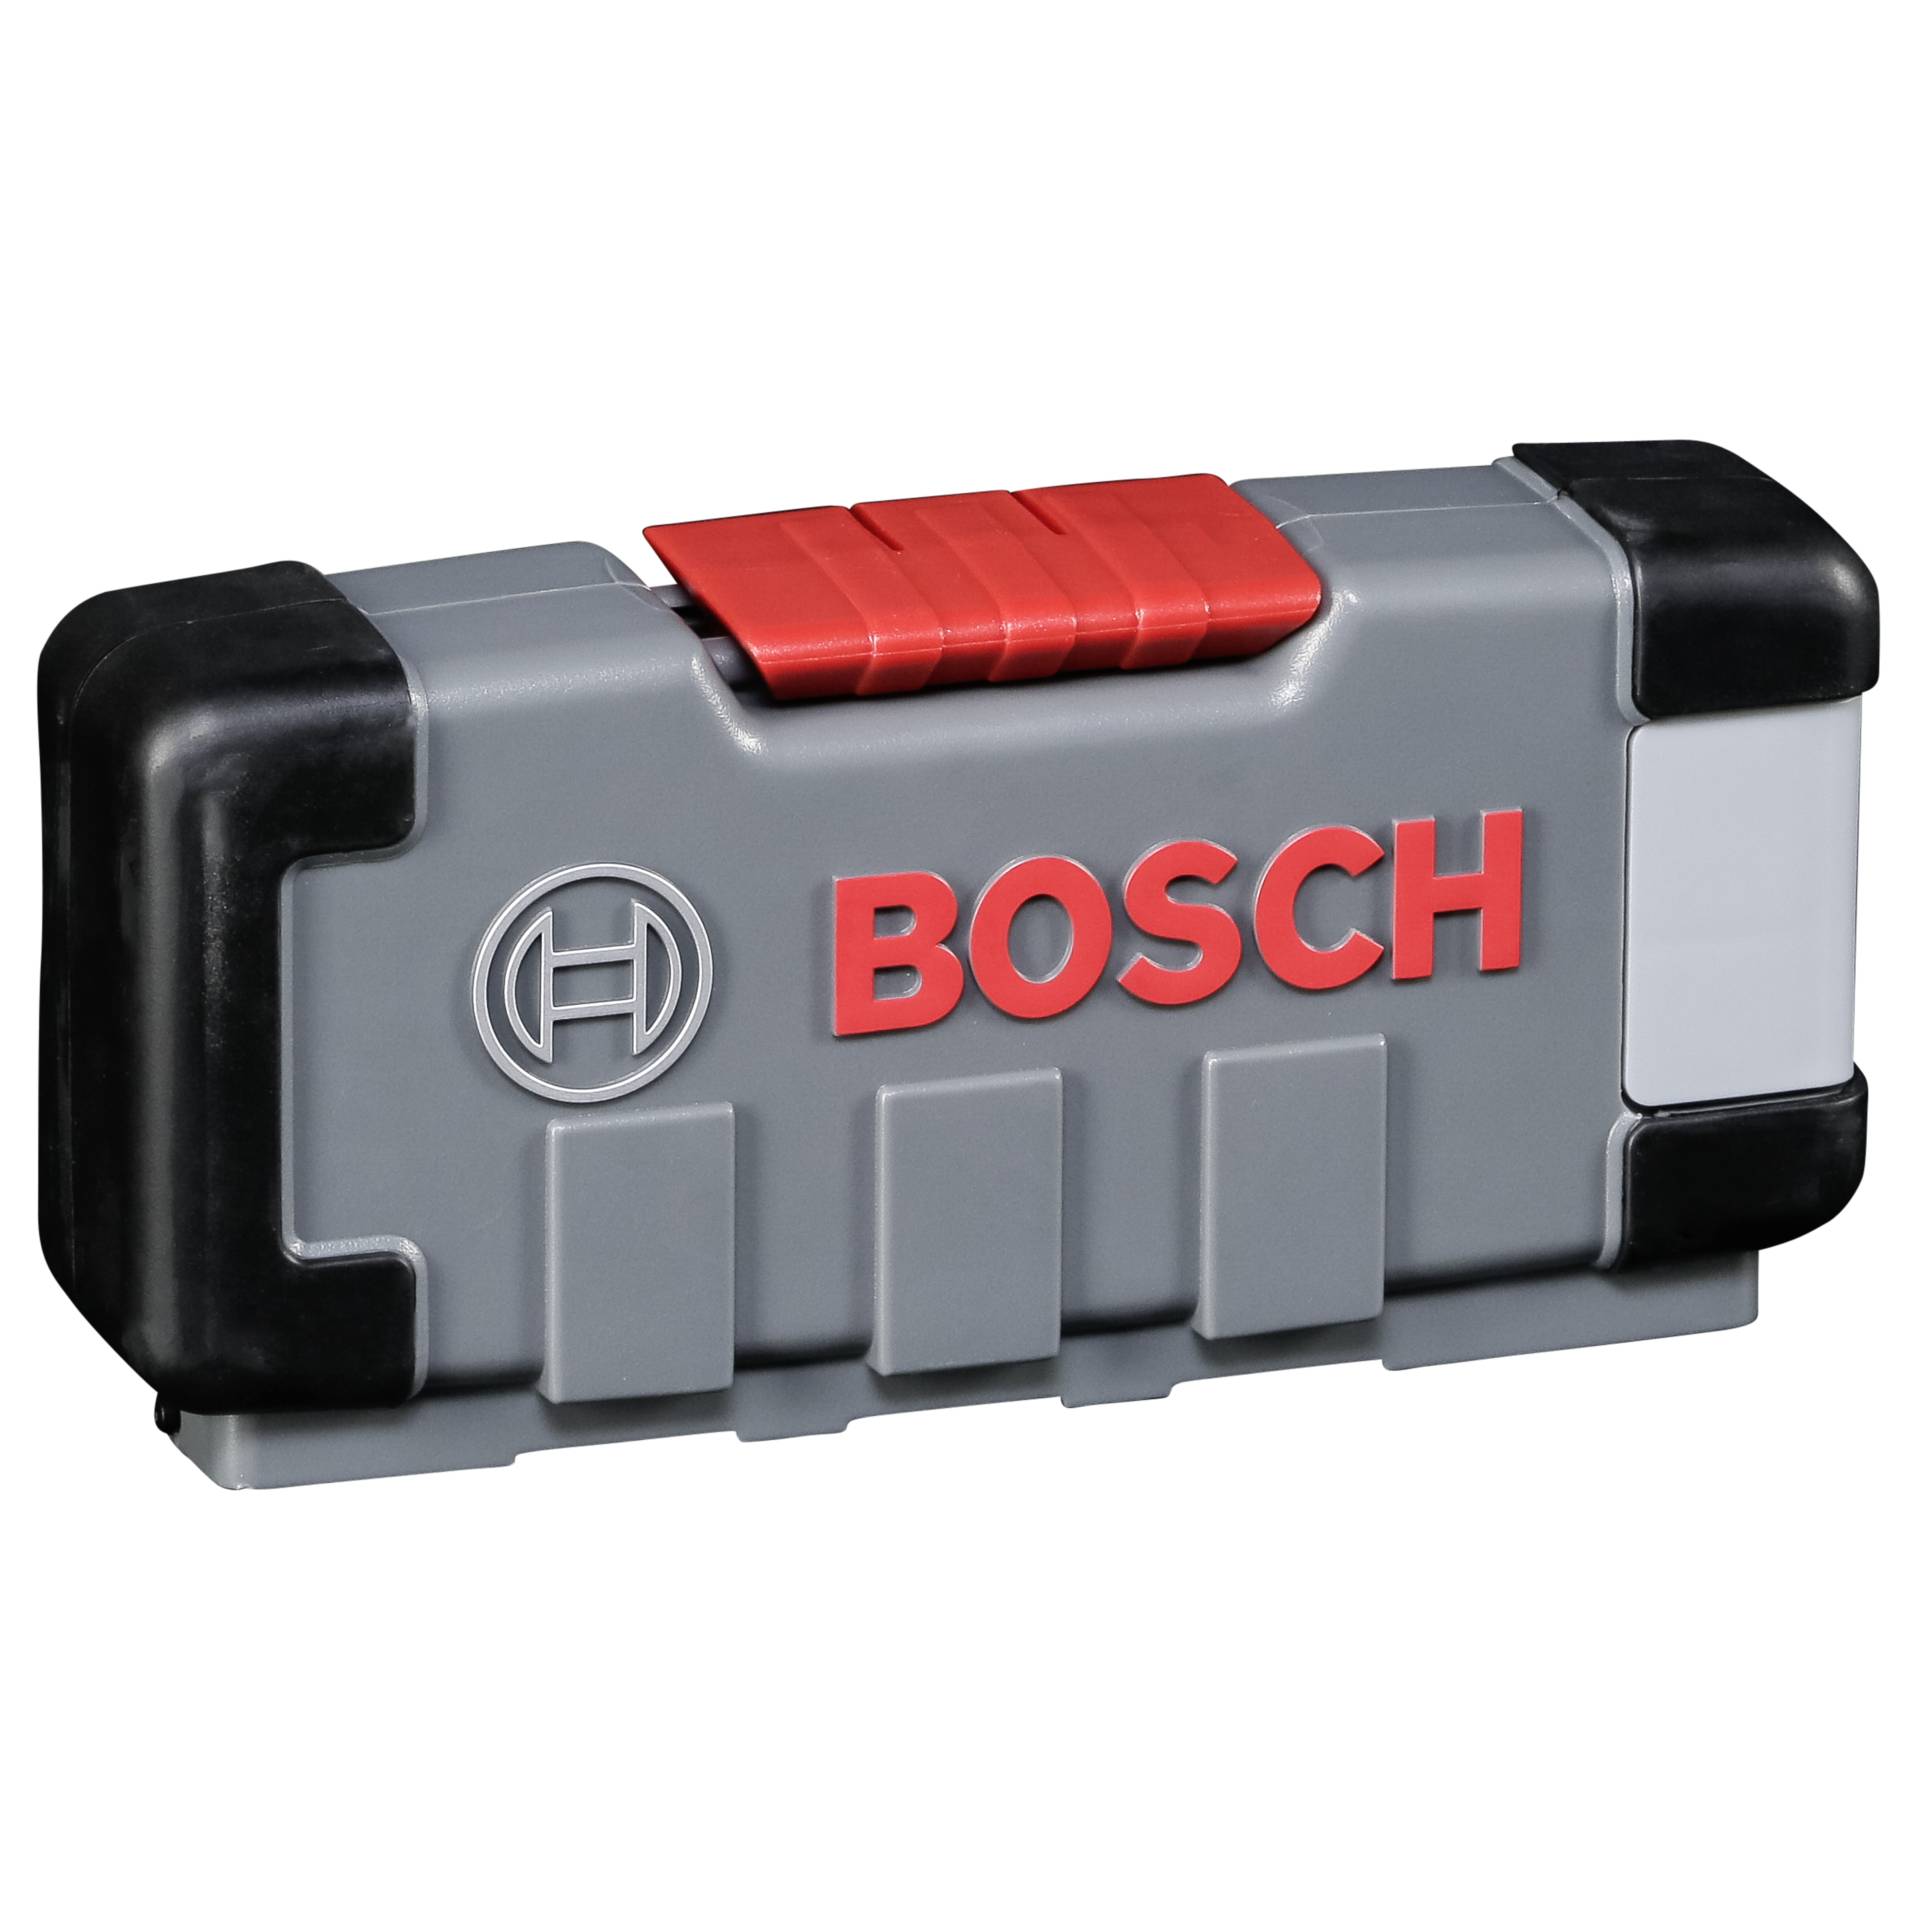 Bosch 30tlg. Stichsägeblatt-Set Holz und Metall T119BO, T111C, T